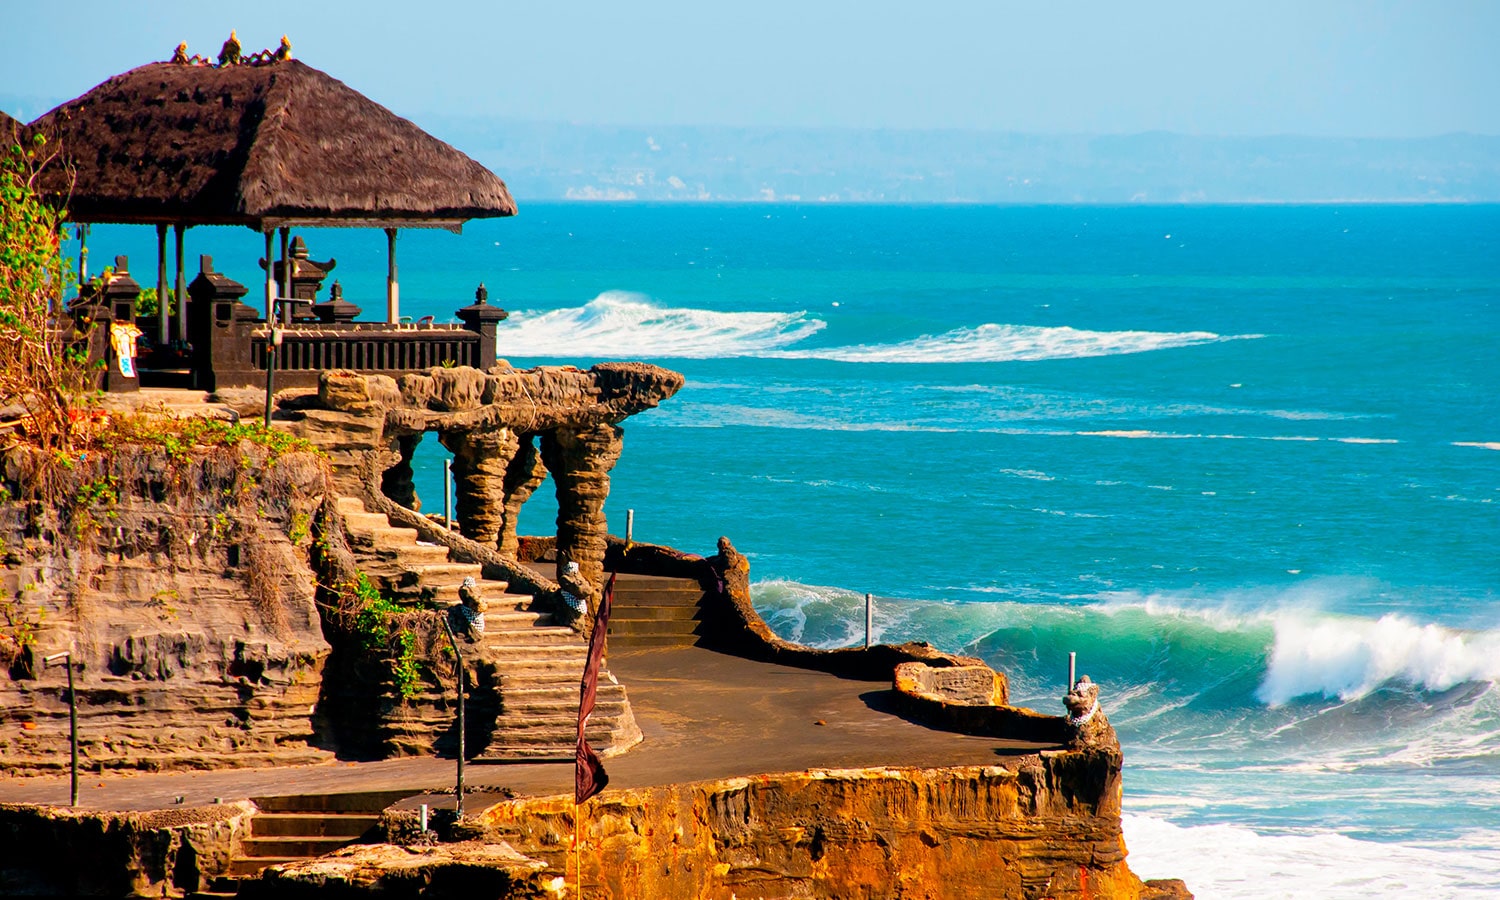 Bali background image